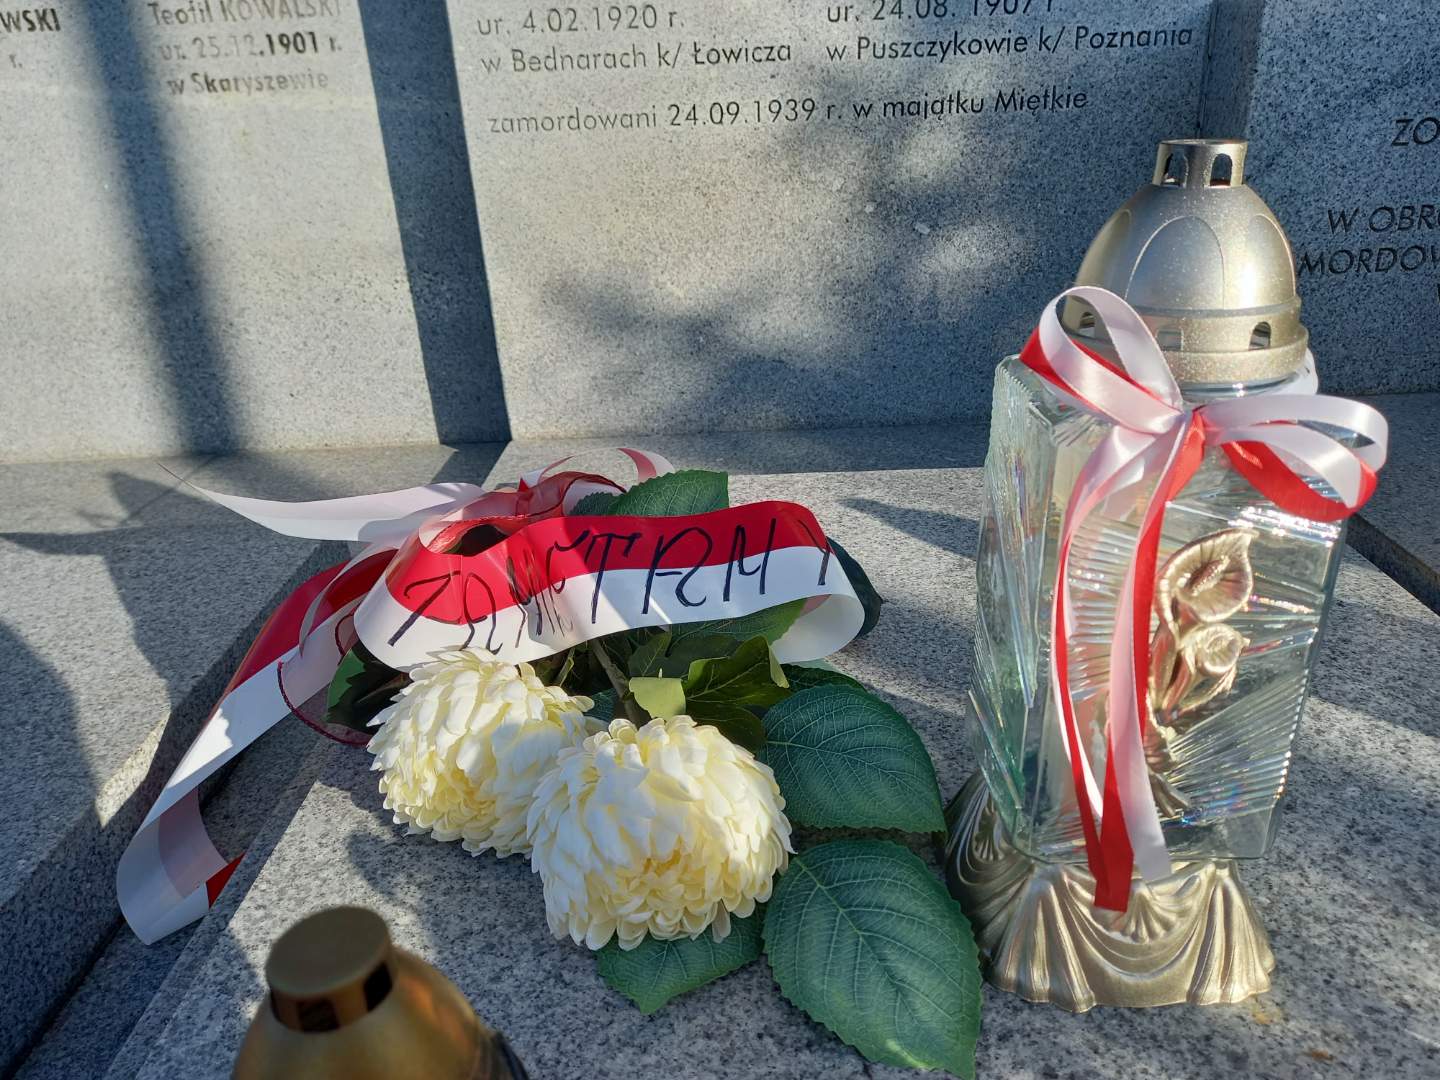 Zapalony znicz i kwiaty z biało-czerwonymi wstęgami w miejscu pamięci narodowej. Na wstędze napis: "Pamiętamy!"